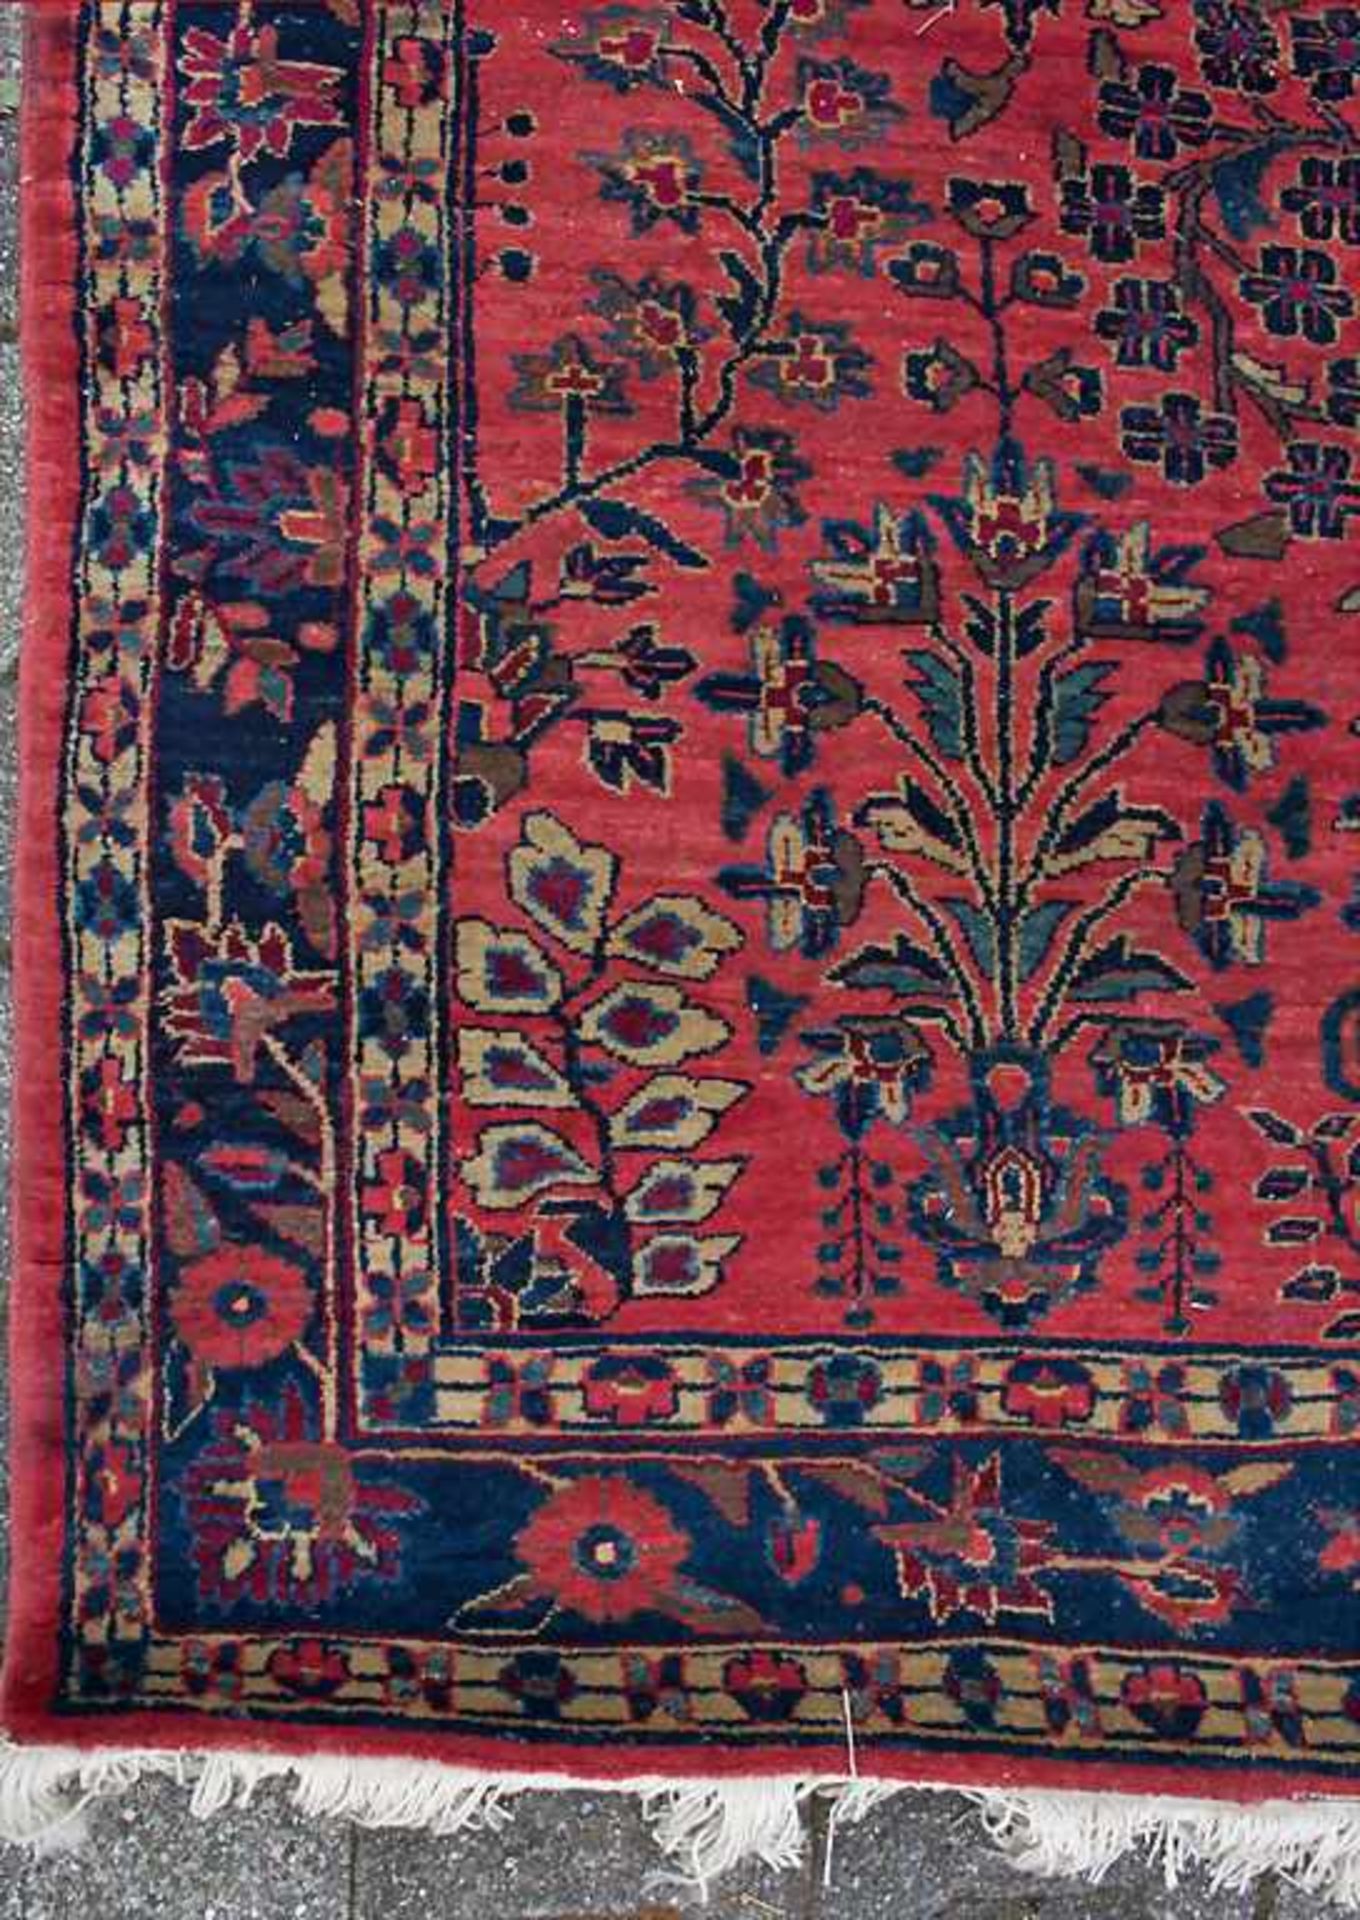 Orientteppich 'Saruk' / An oriental carpet 'Saruk'Material: Wolle auf Baumwolle, Maße: 200 x 140 cm, - Bild 3 aus 8